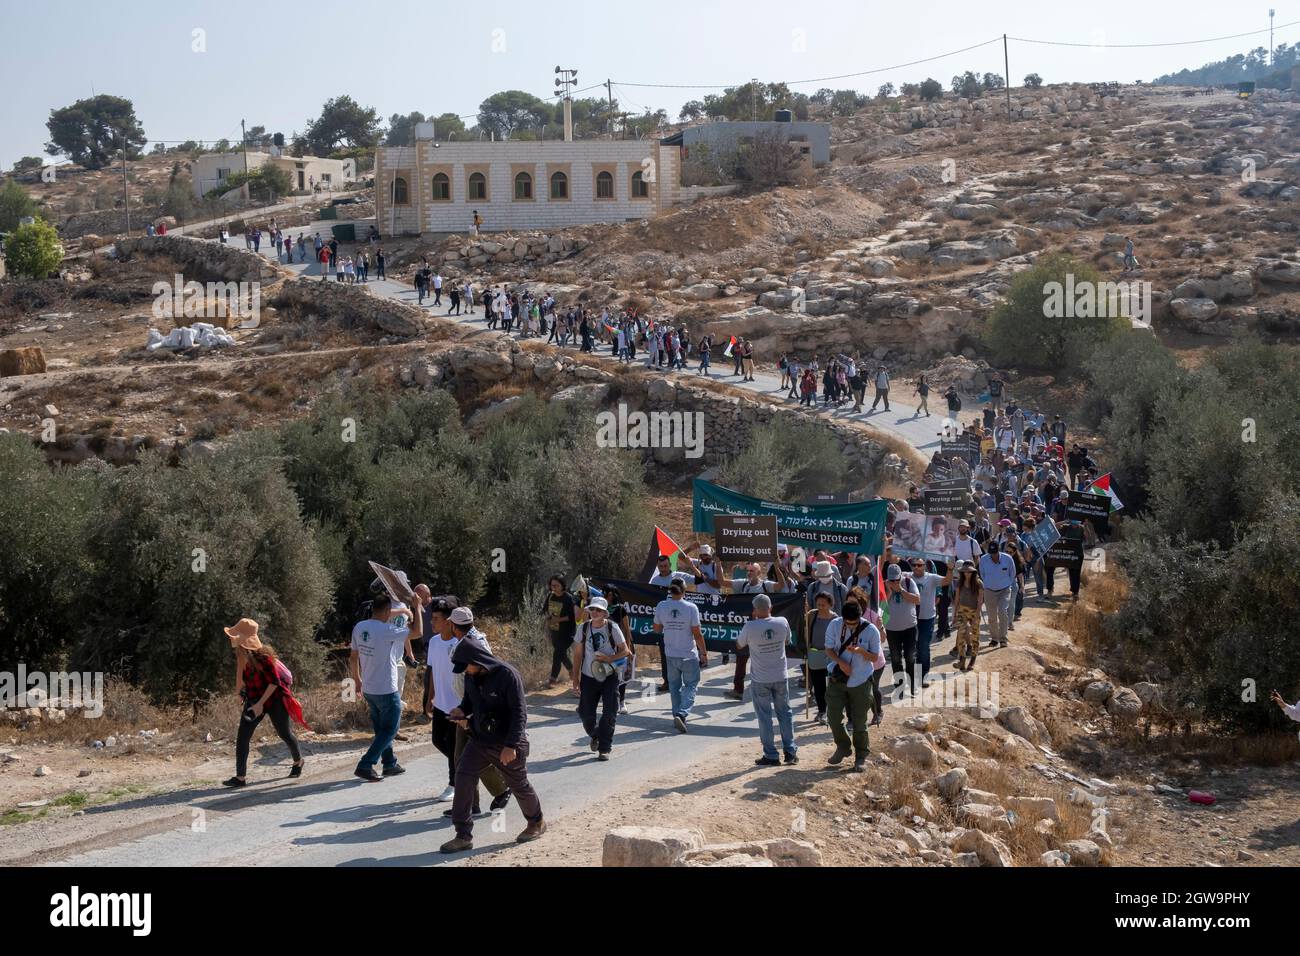 Des manifestants palestiniens et des militants israéliens pour la paix défilent ensemble dans le village palestinien d'al-Tiwani lors d'une manifestation contre la coupure de l'approvisionnement en eau des villages palestiniens, Et la solidarité avec le camp de bergers palestiniens Khirbat al-Mufaqara qui a été attaqué plus tôt cette semaine par des colons juifs dans les collines de South Hebron le 02 octobre 2021 en Cisjordanie, Israël. Au cours des deux dernières décennies, les autorités israéliennes ont tenté d'expulser les Palestiniens vivant dans la région des collines de South Hebron, sur le terrain de vivre illégalement dans les zones de feu militaires israéliennes. Banque D'Images